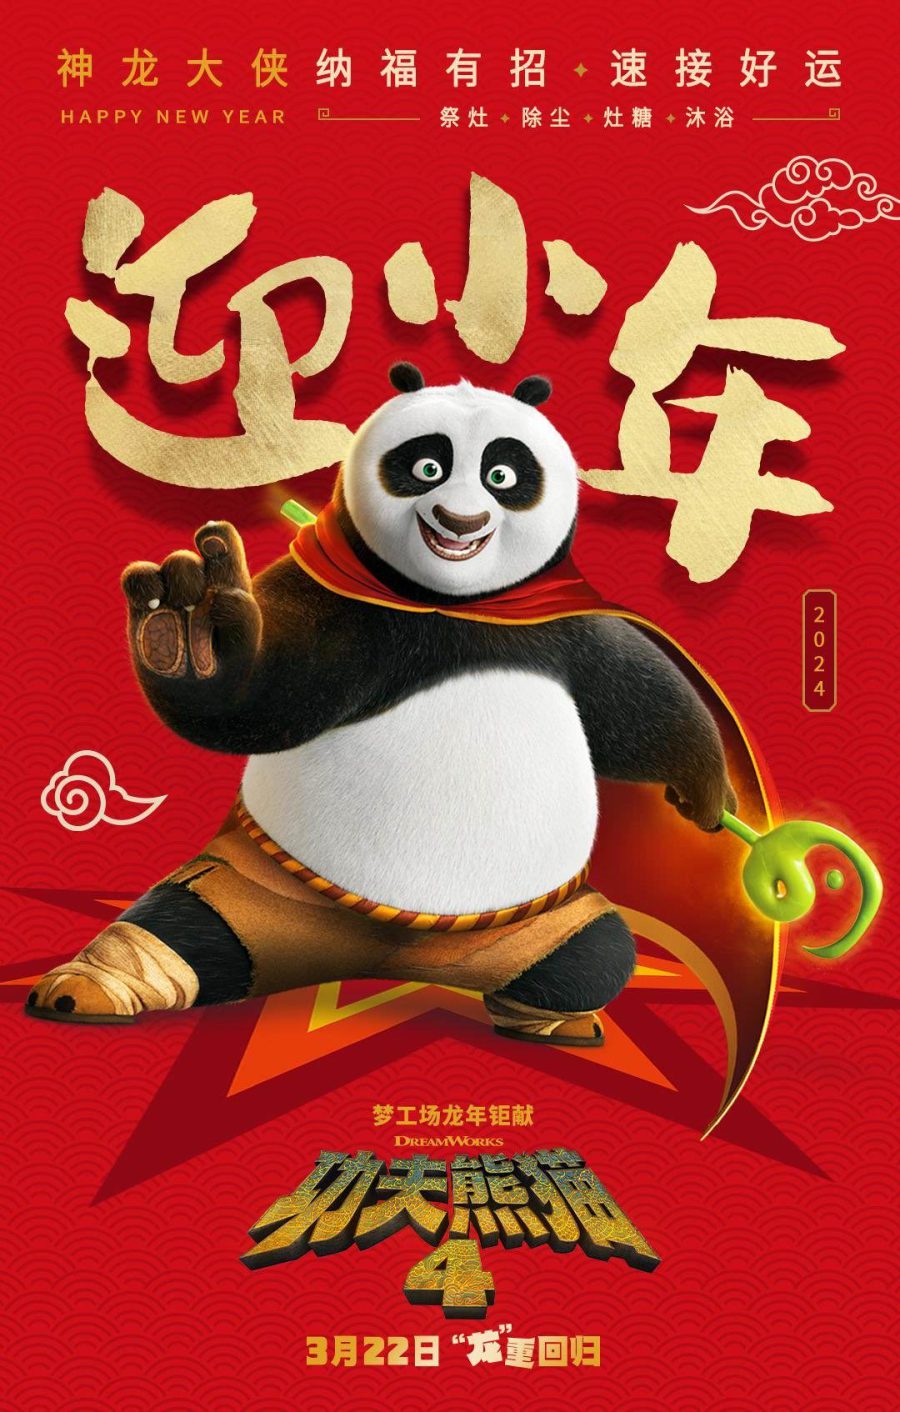 پوستر انیمیشن Kung Fu Panda 4؛ آمادگی پو برای مبارزه